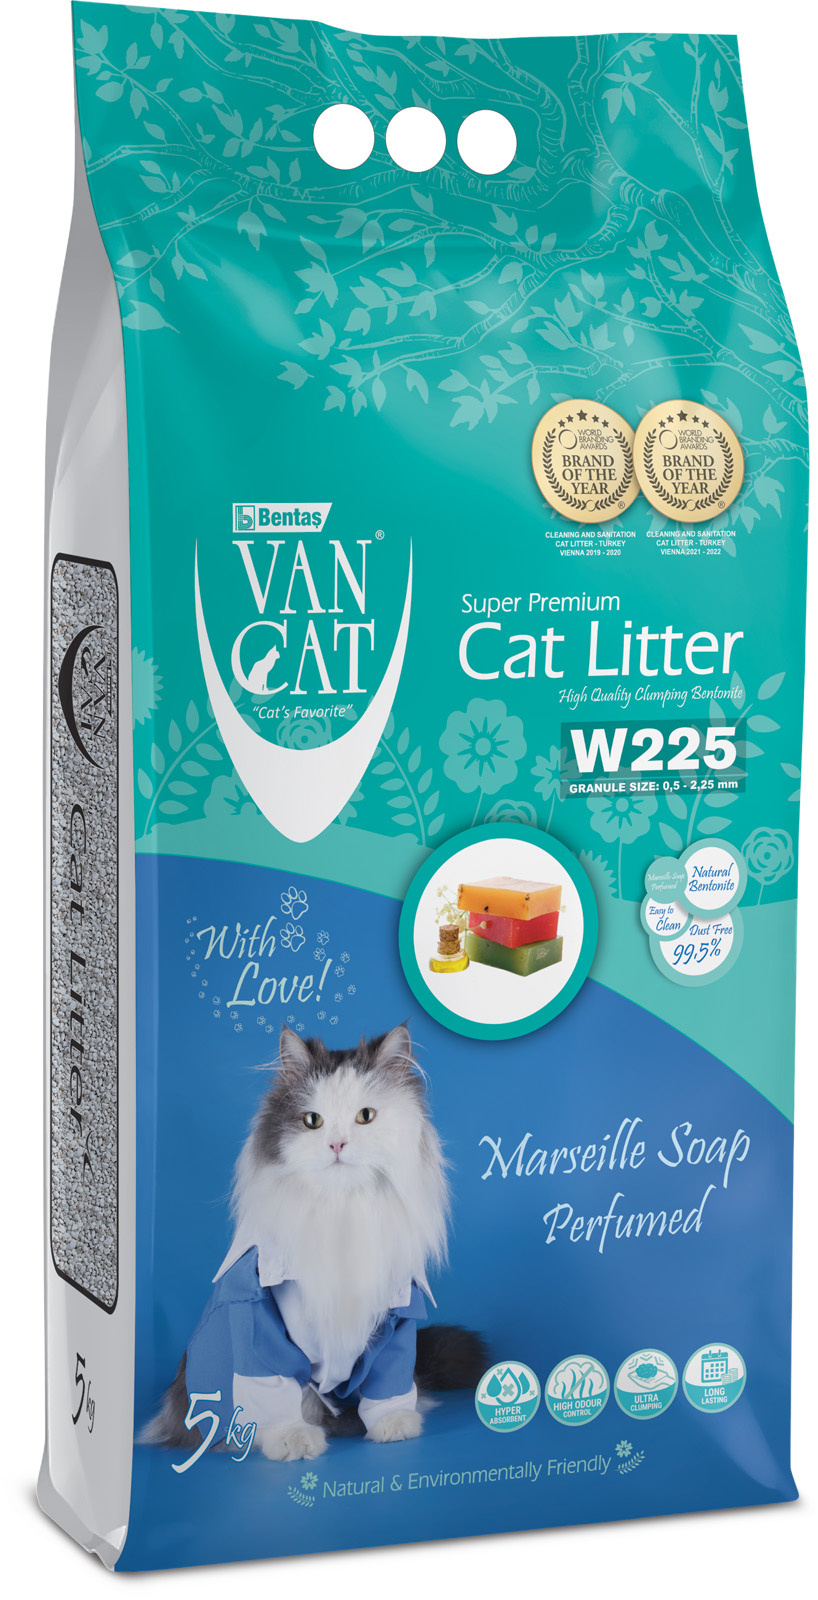 Van Cat комкующийся наполнитель без пыли с ароматом марсельского мыла, пакет (10 кг) Van Cat комкующийся наполнитель без пыли с ароматом марсельского мыла, пакет (10 кг) - фото 1